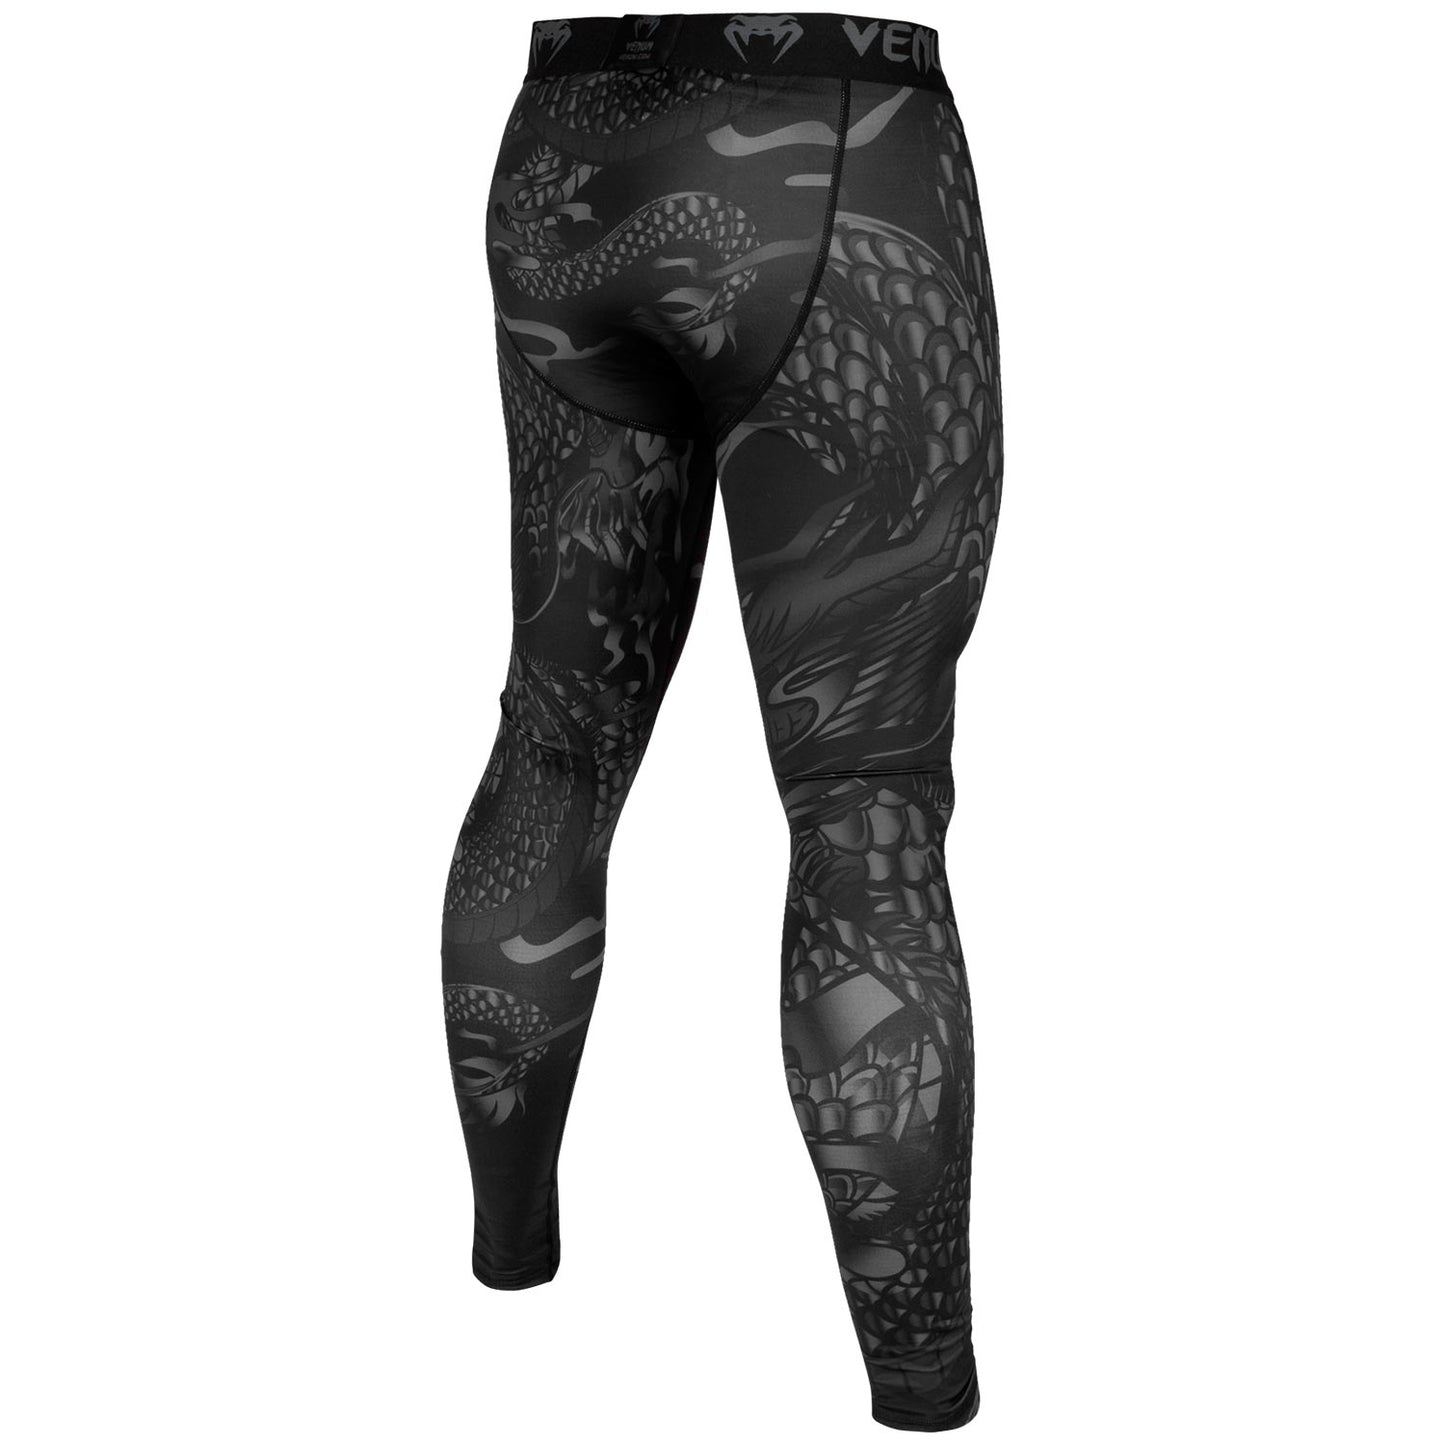 Pantaloni di compressione Venum Dragon's Flight - Nero/Nero